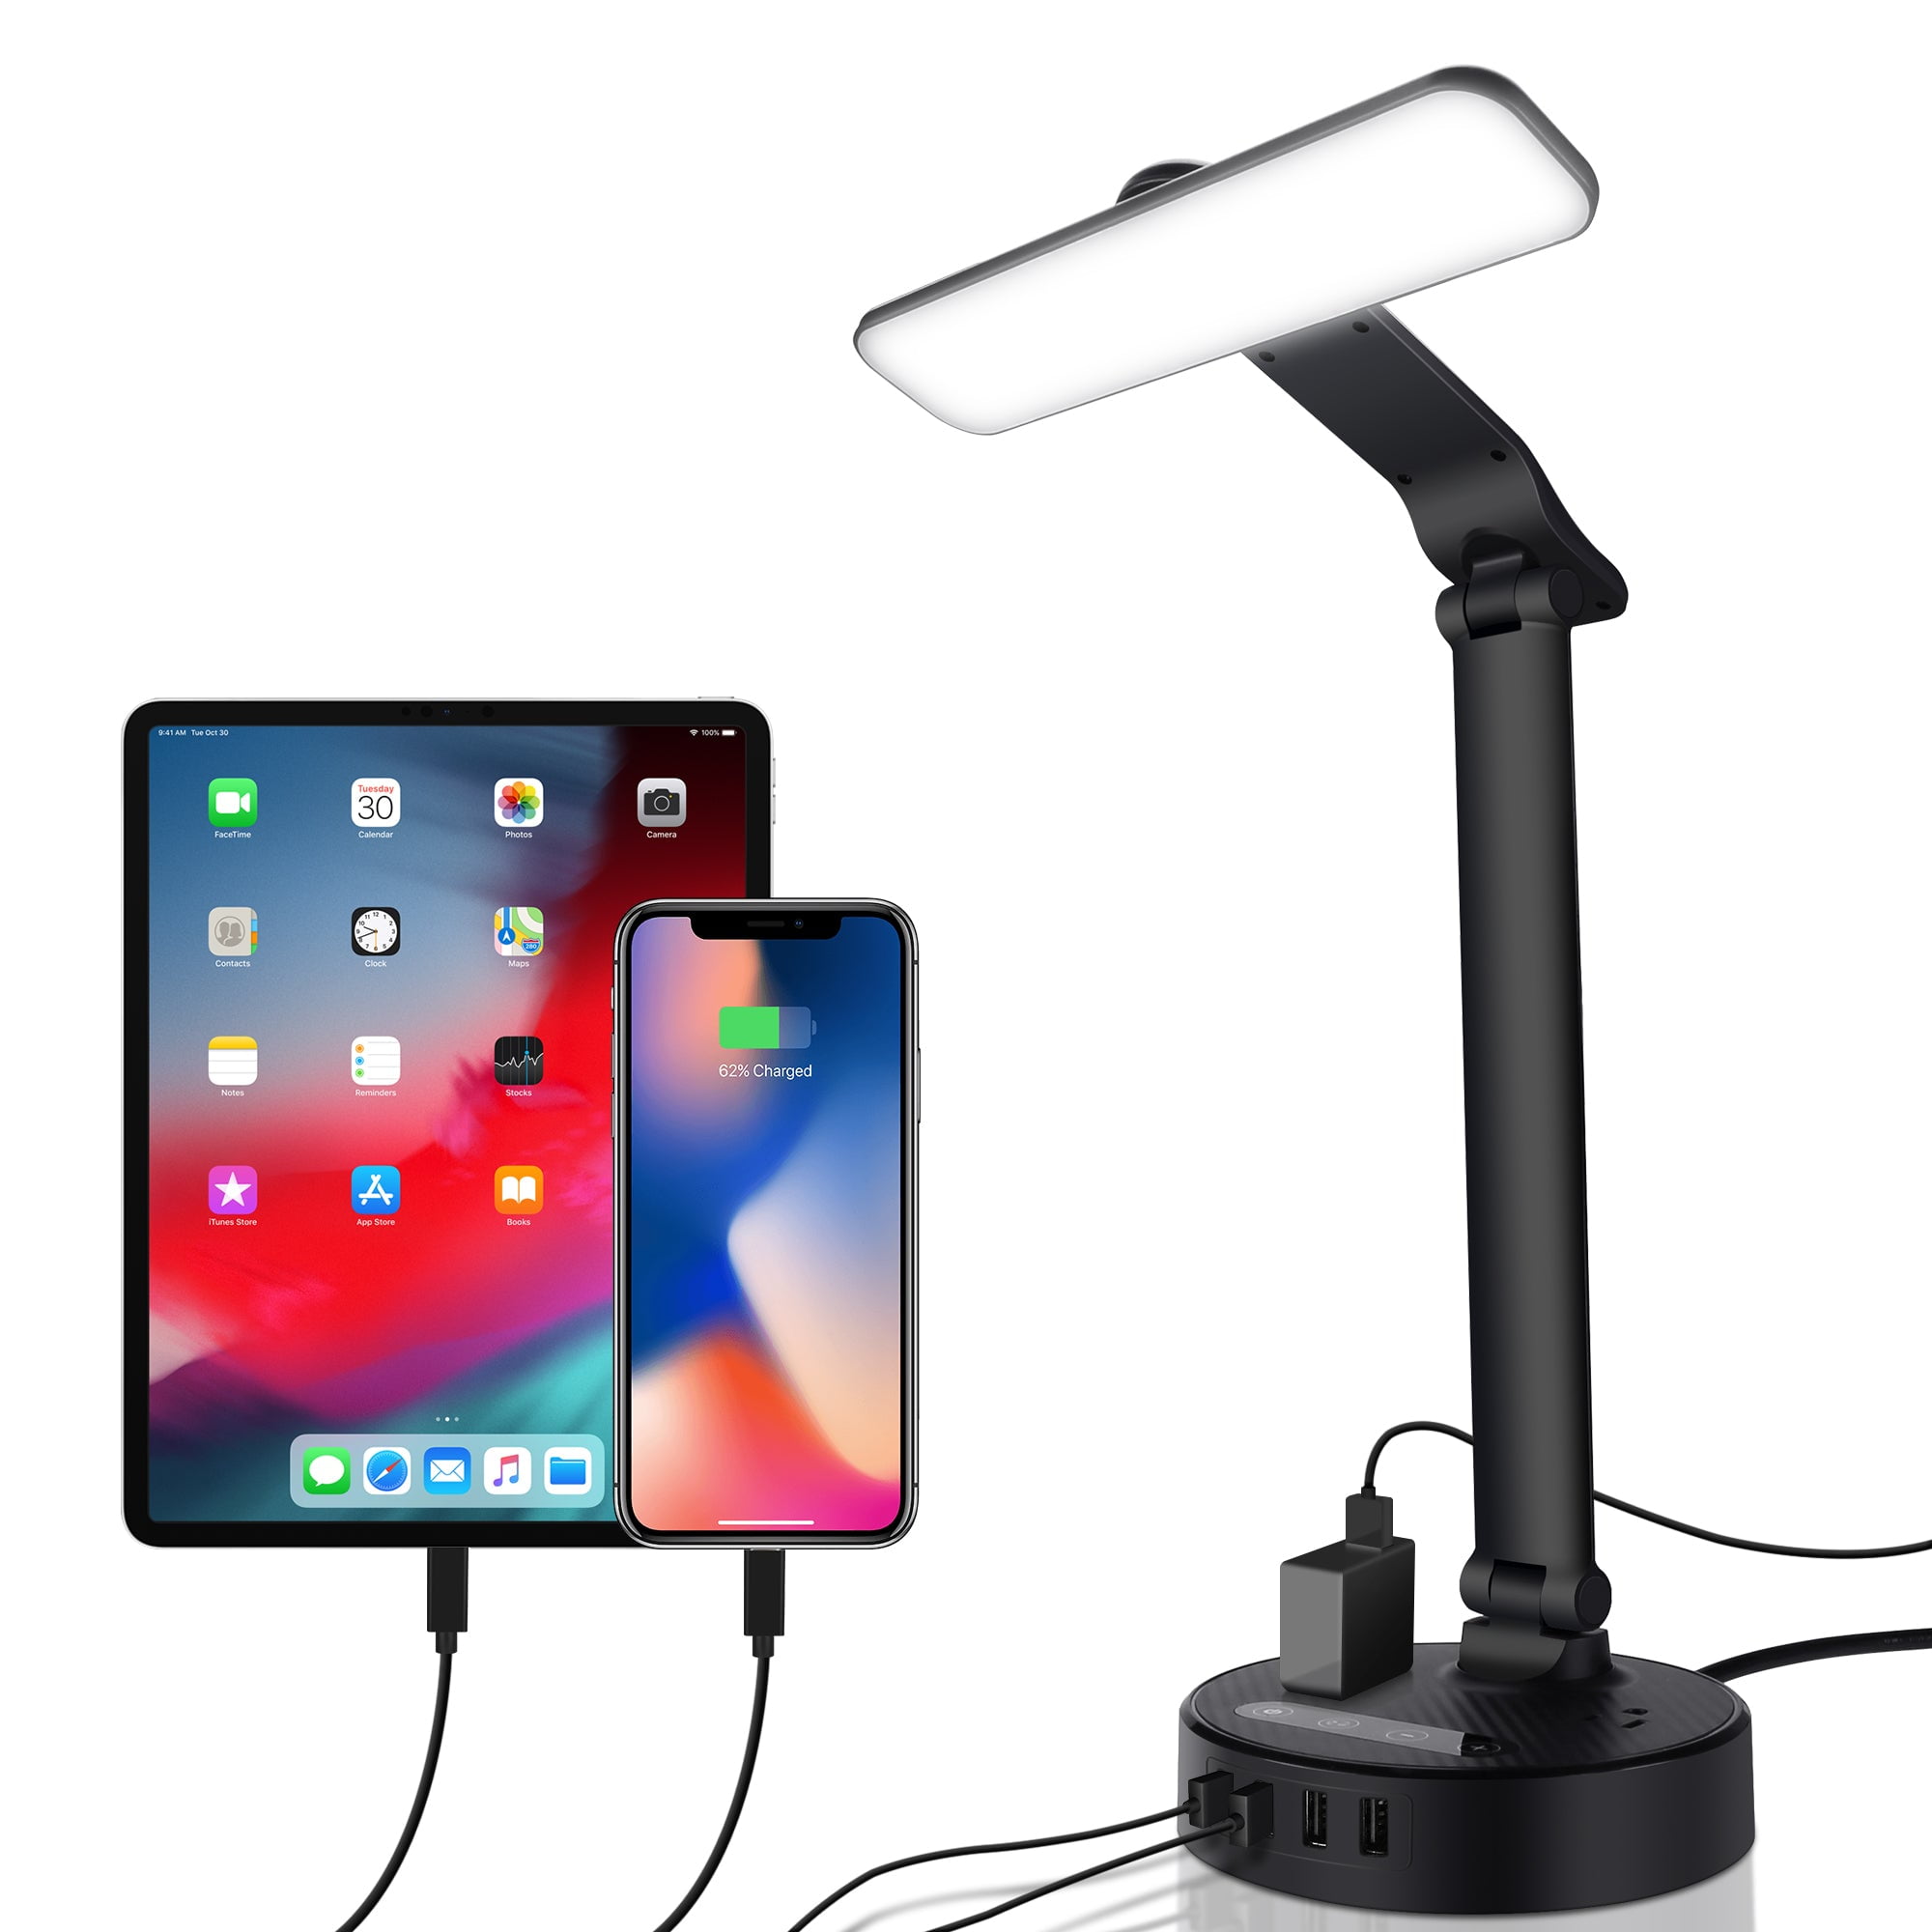 Etekcity LED Desk Lamp with USB Charging Port